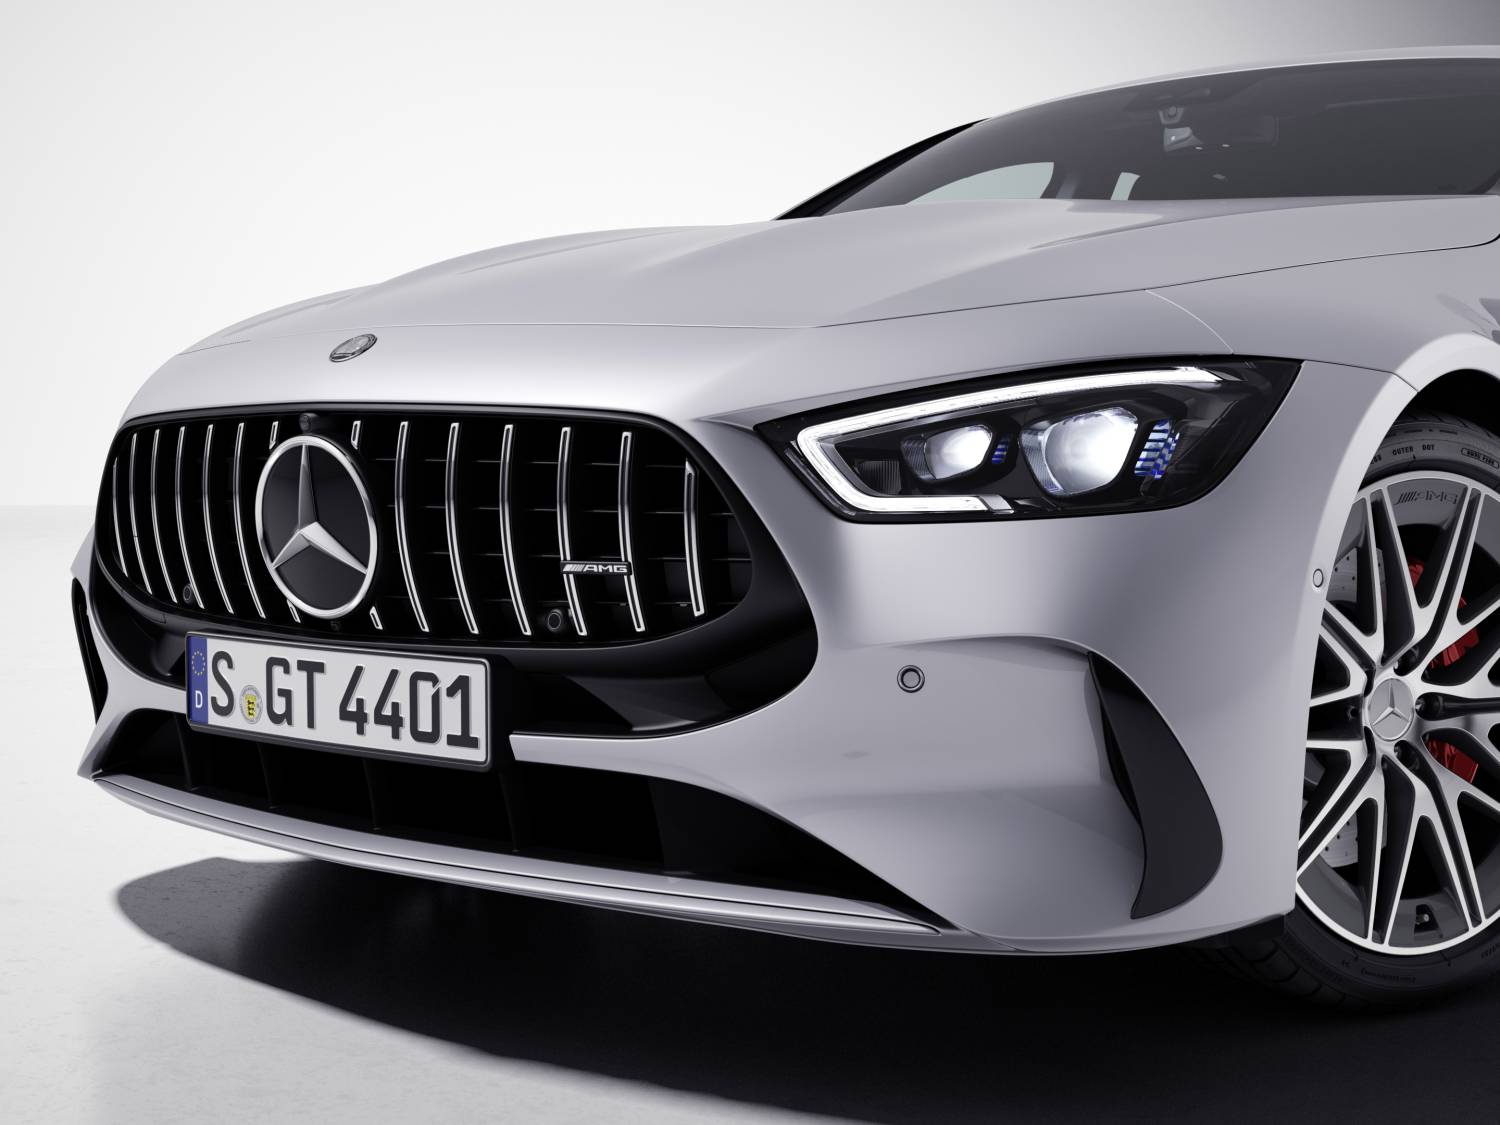 Mercedes standard neu - beim Dipl.-Ing. am Bodensee